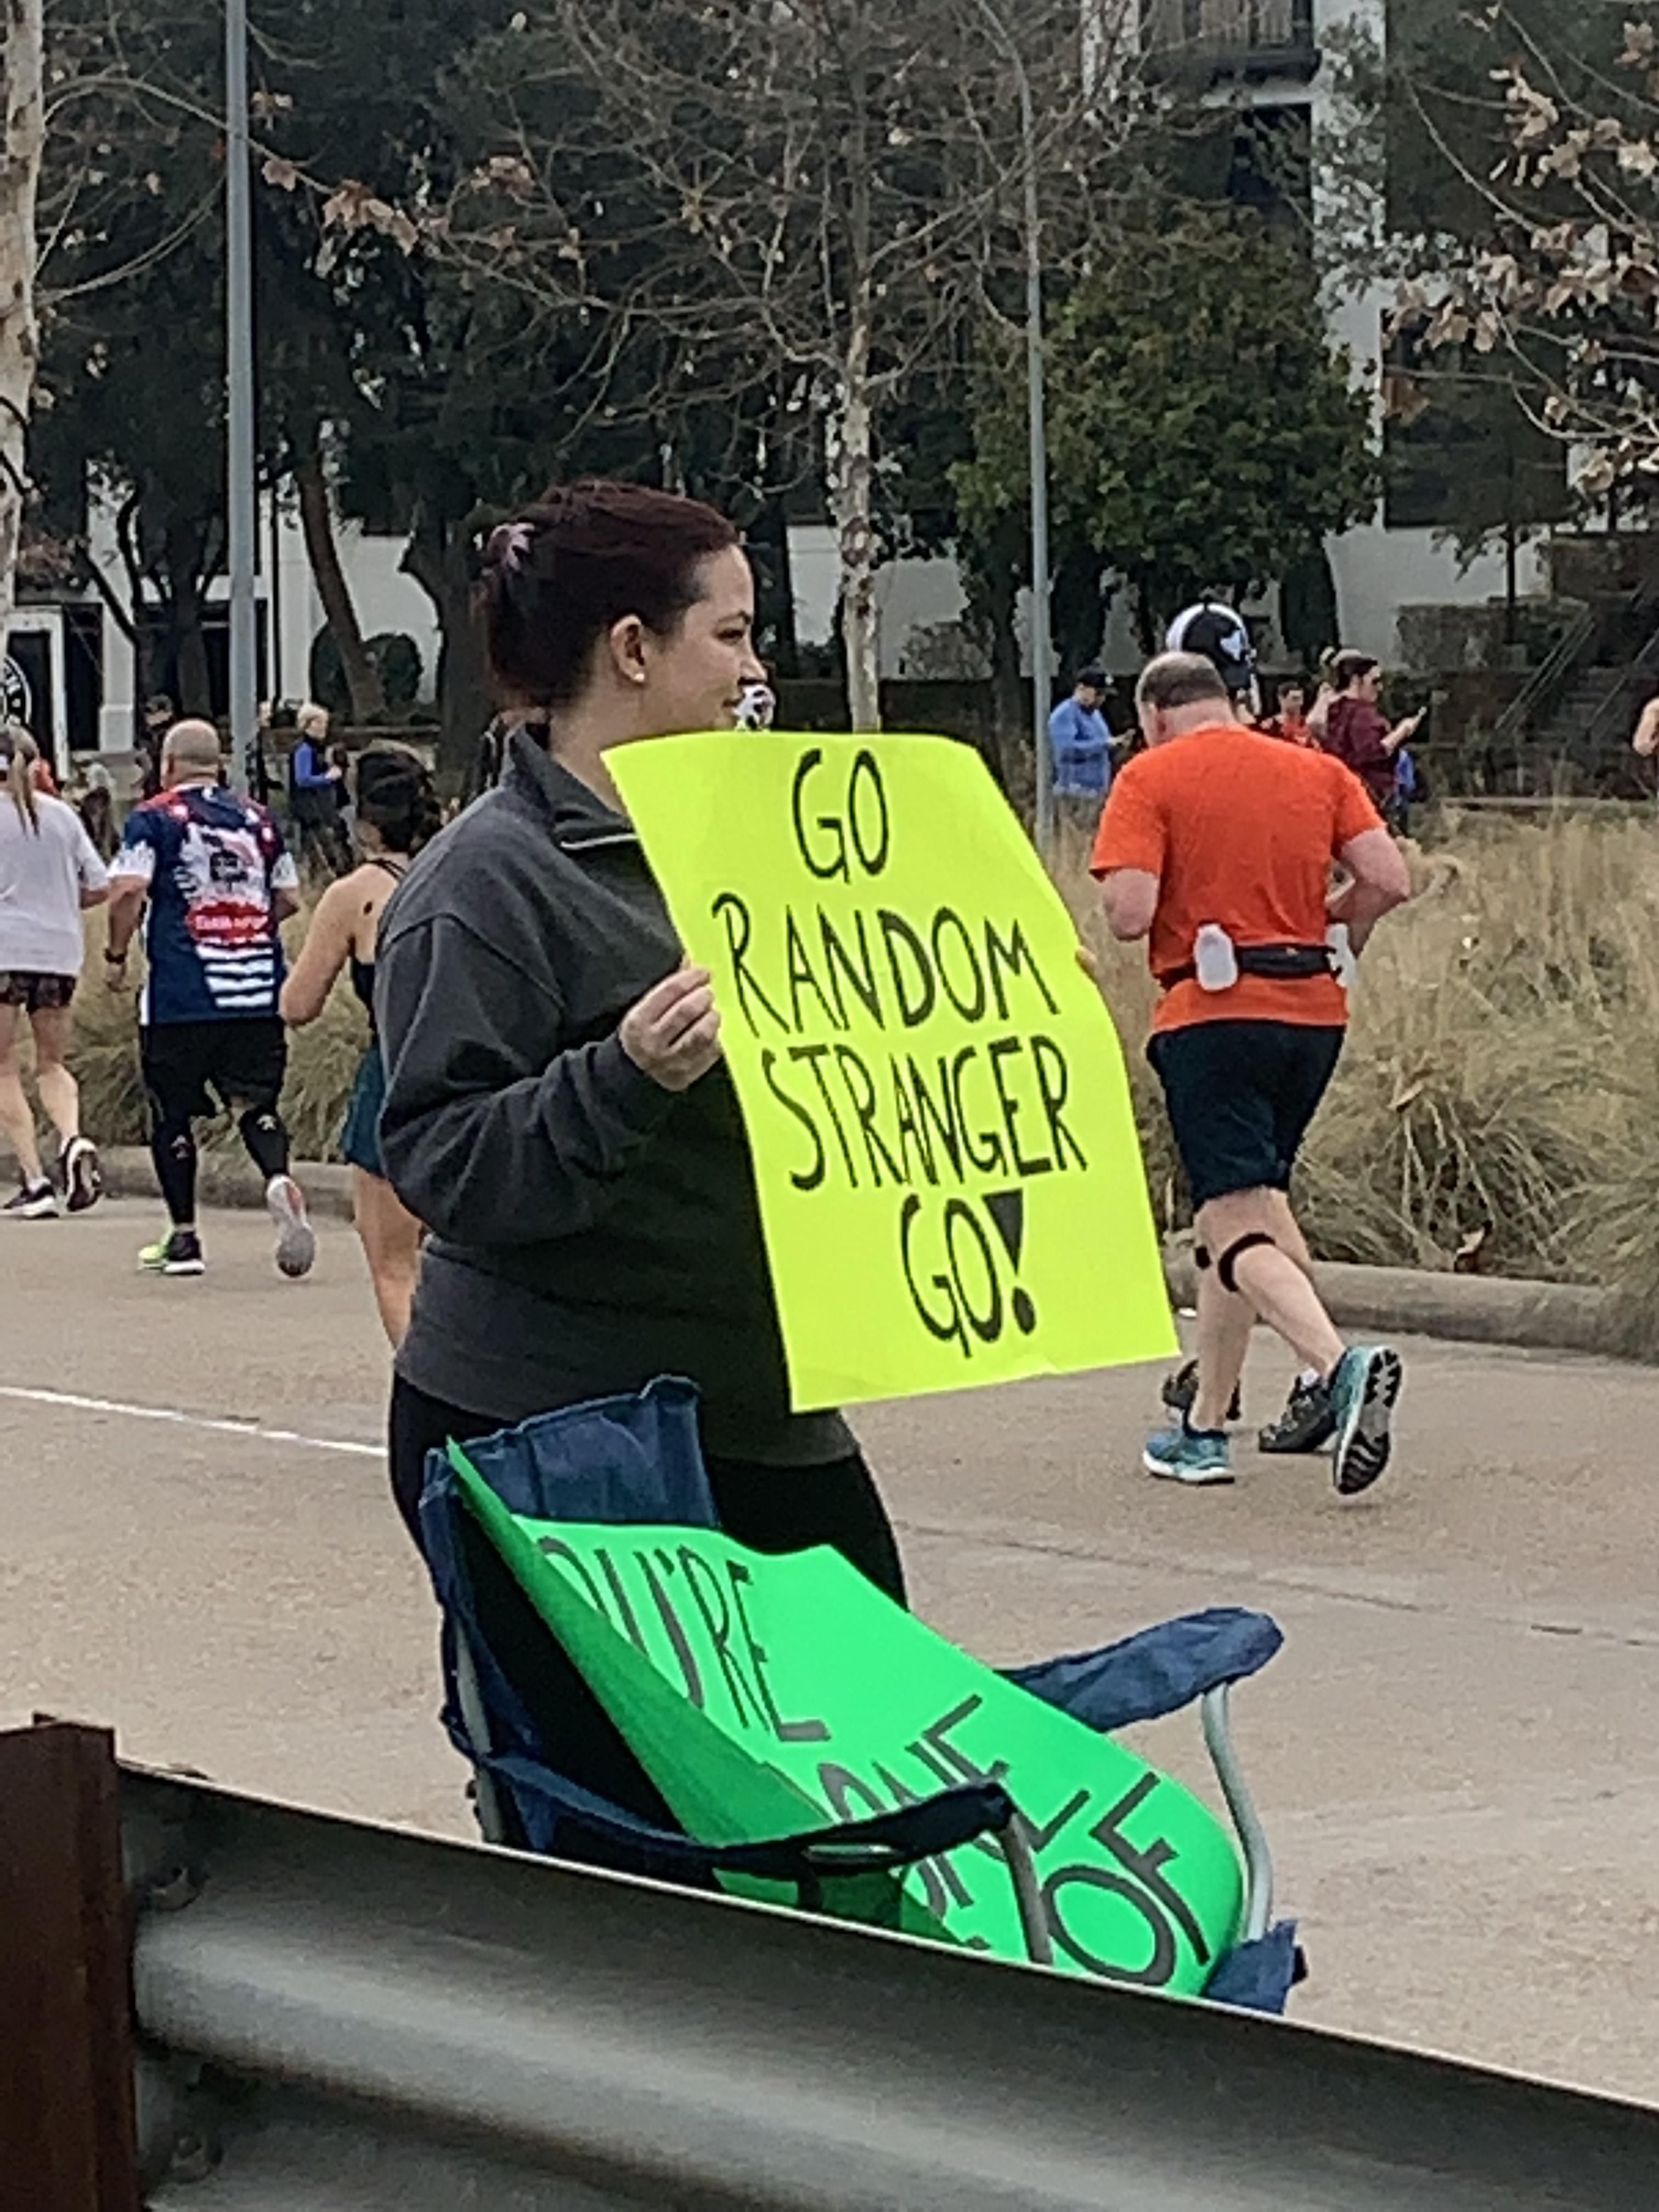 Was at a marathon.